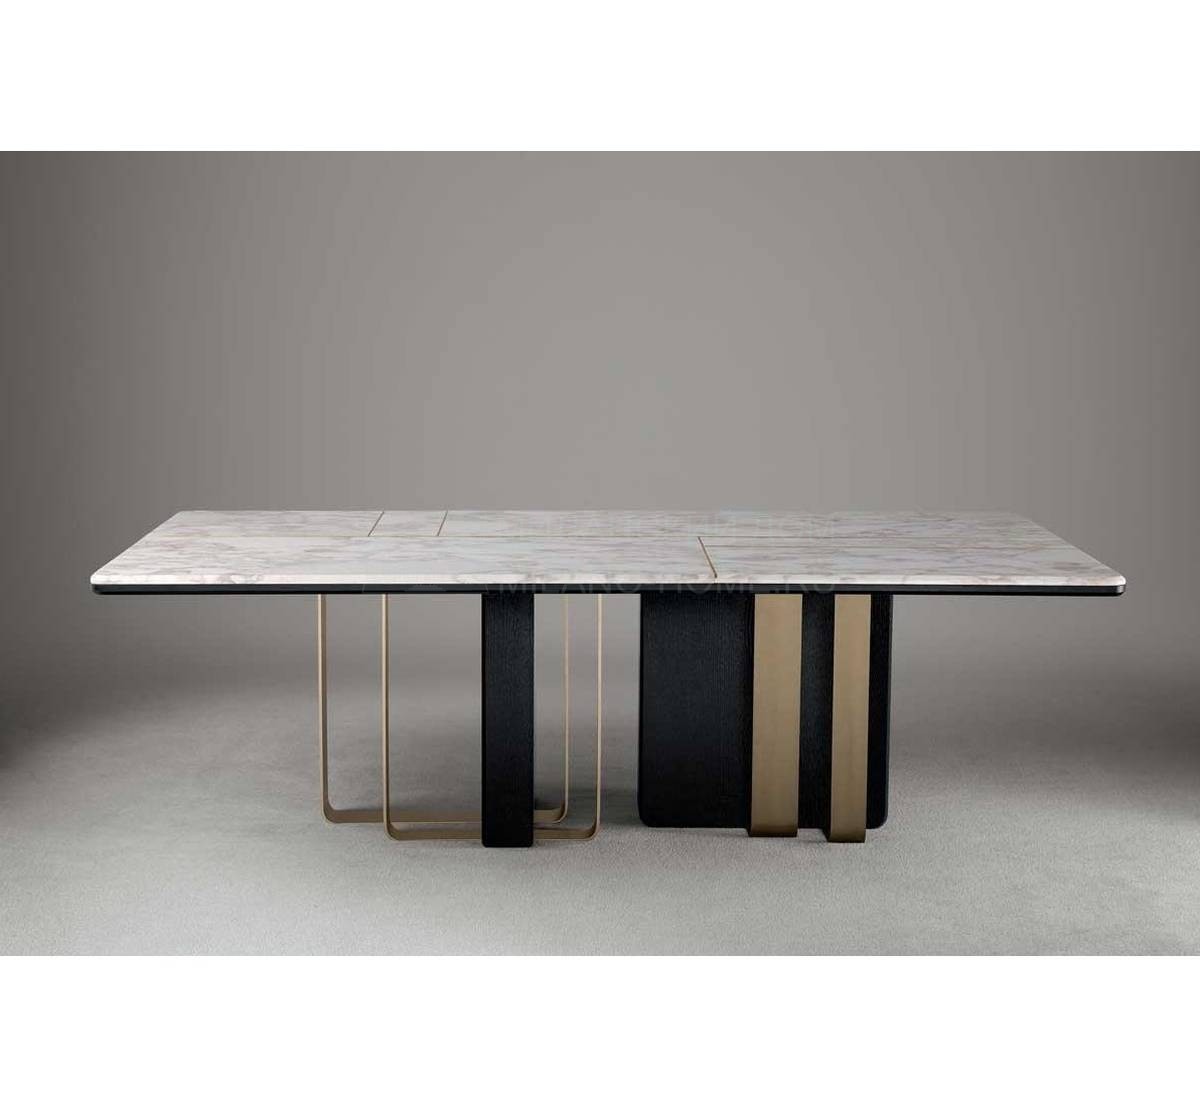 Обеденный стол Saint-Germain table из Италии фабрики OASIS